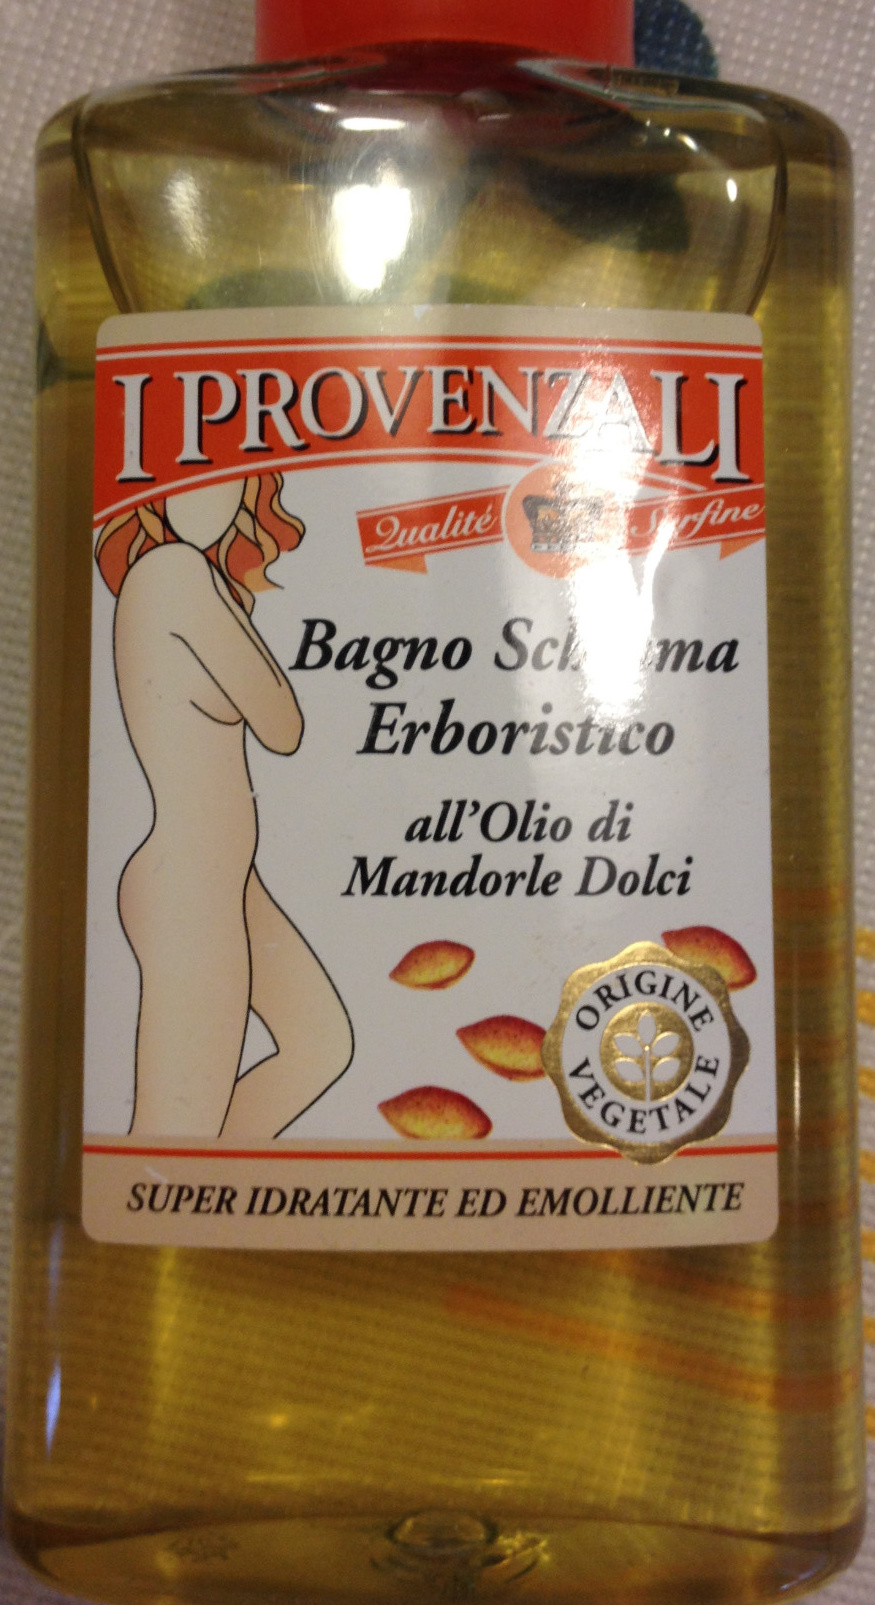 Bagno schiuma erboristico - Produto - it